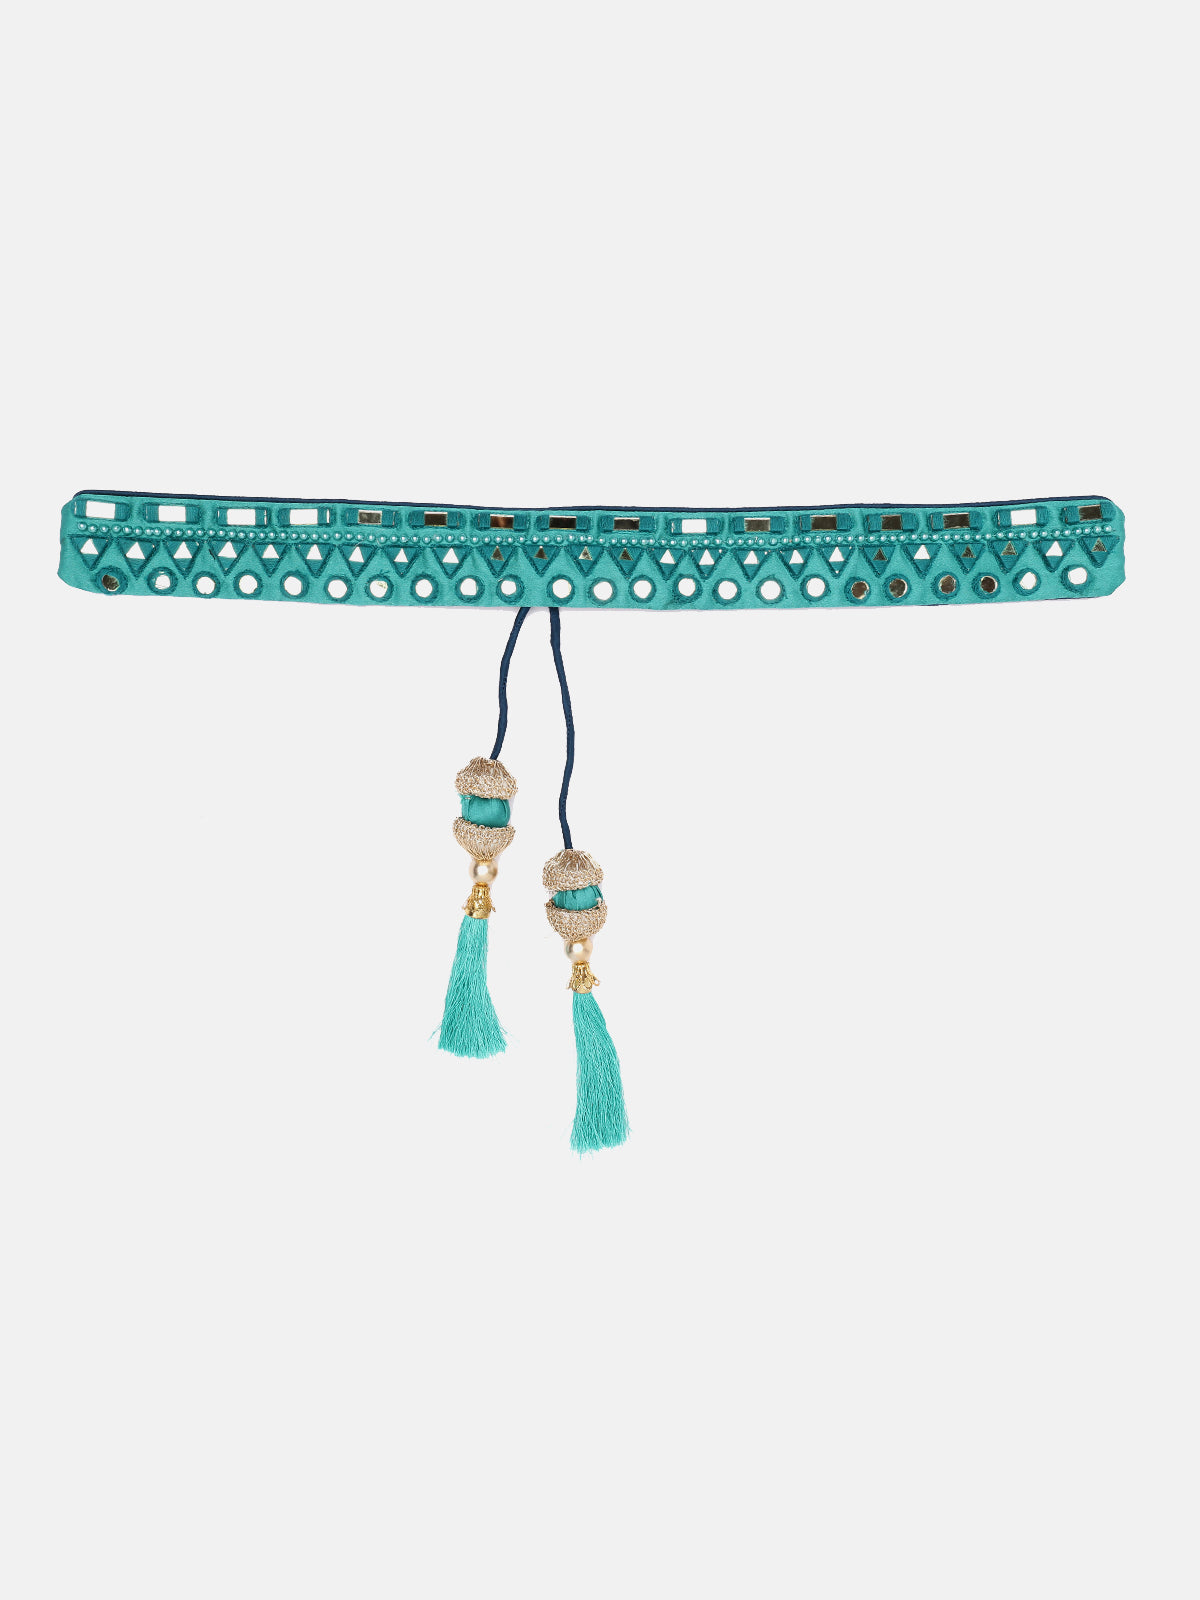 Sea-Green Designer Mirror Work Hand Made Ethnic Waist Belt With Tassels